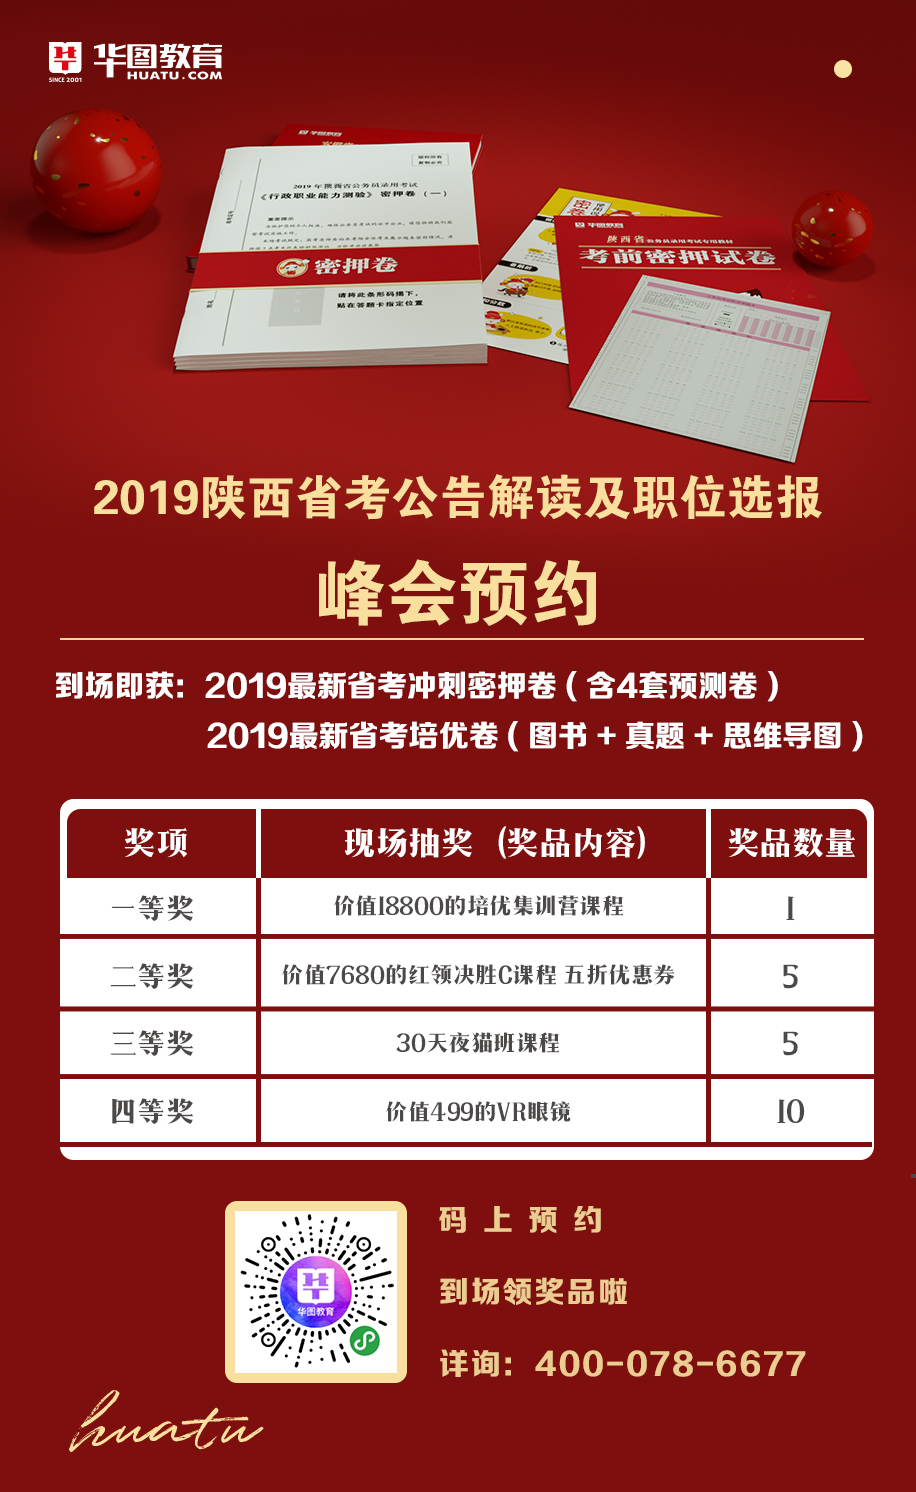 2019陕西省考公告解读峰会预约